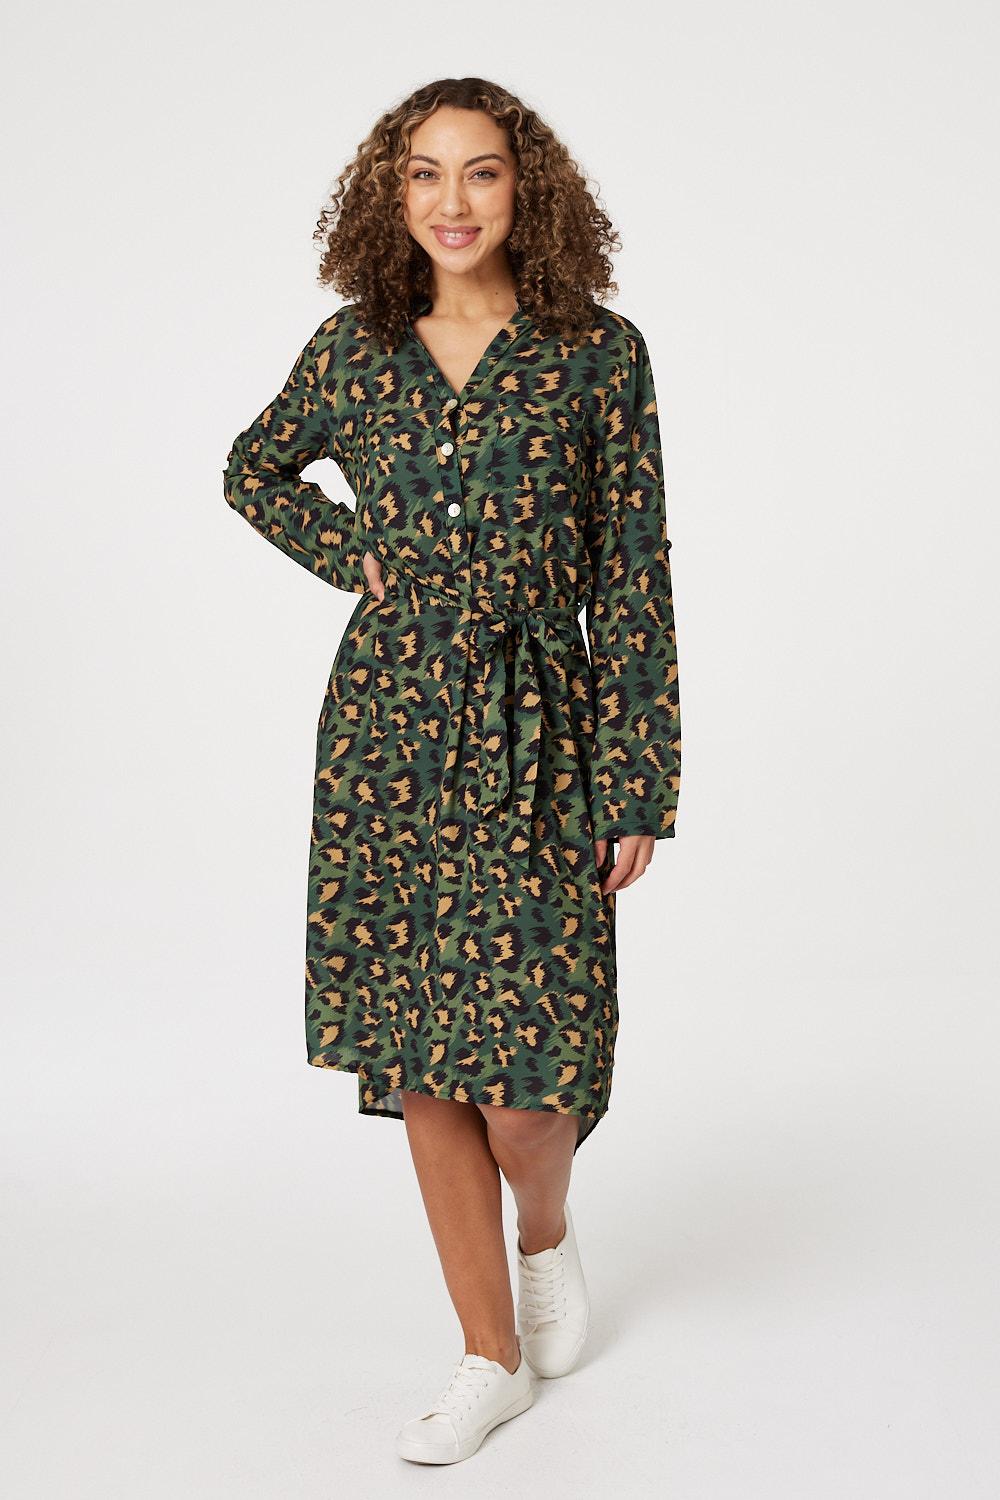 Green | Leopard Print Button Front Dress